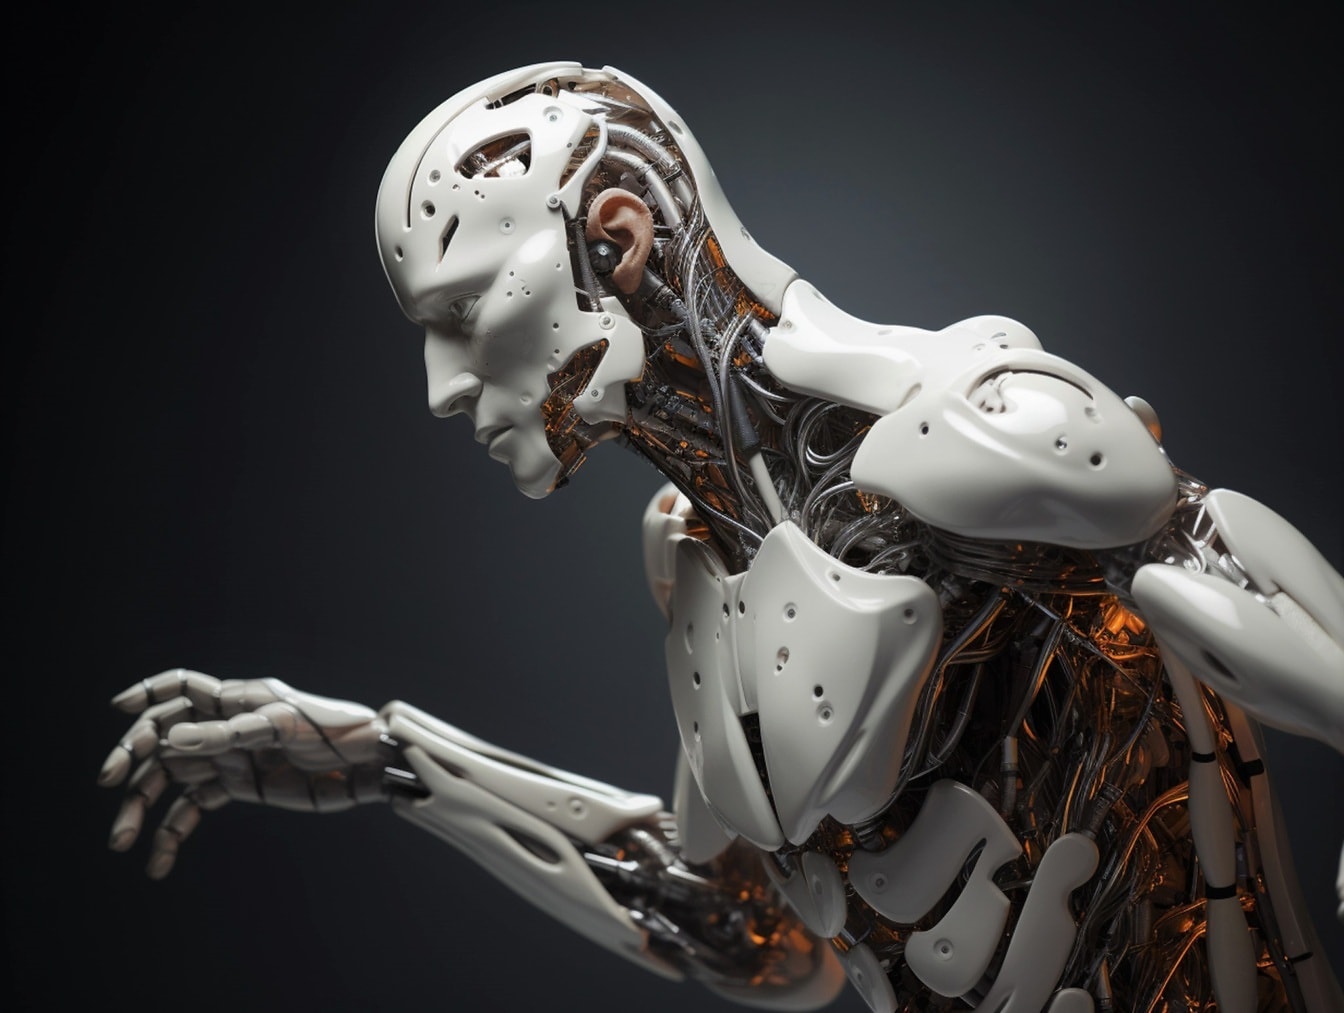 Robot cyborg humanoide blanco con inteligencia artificial